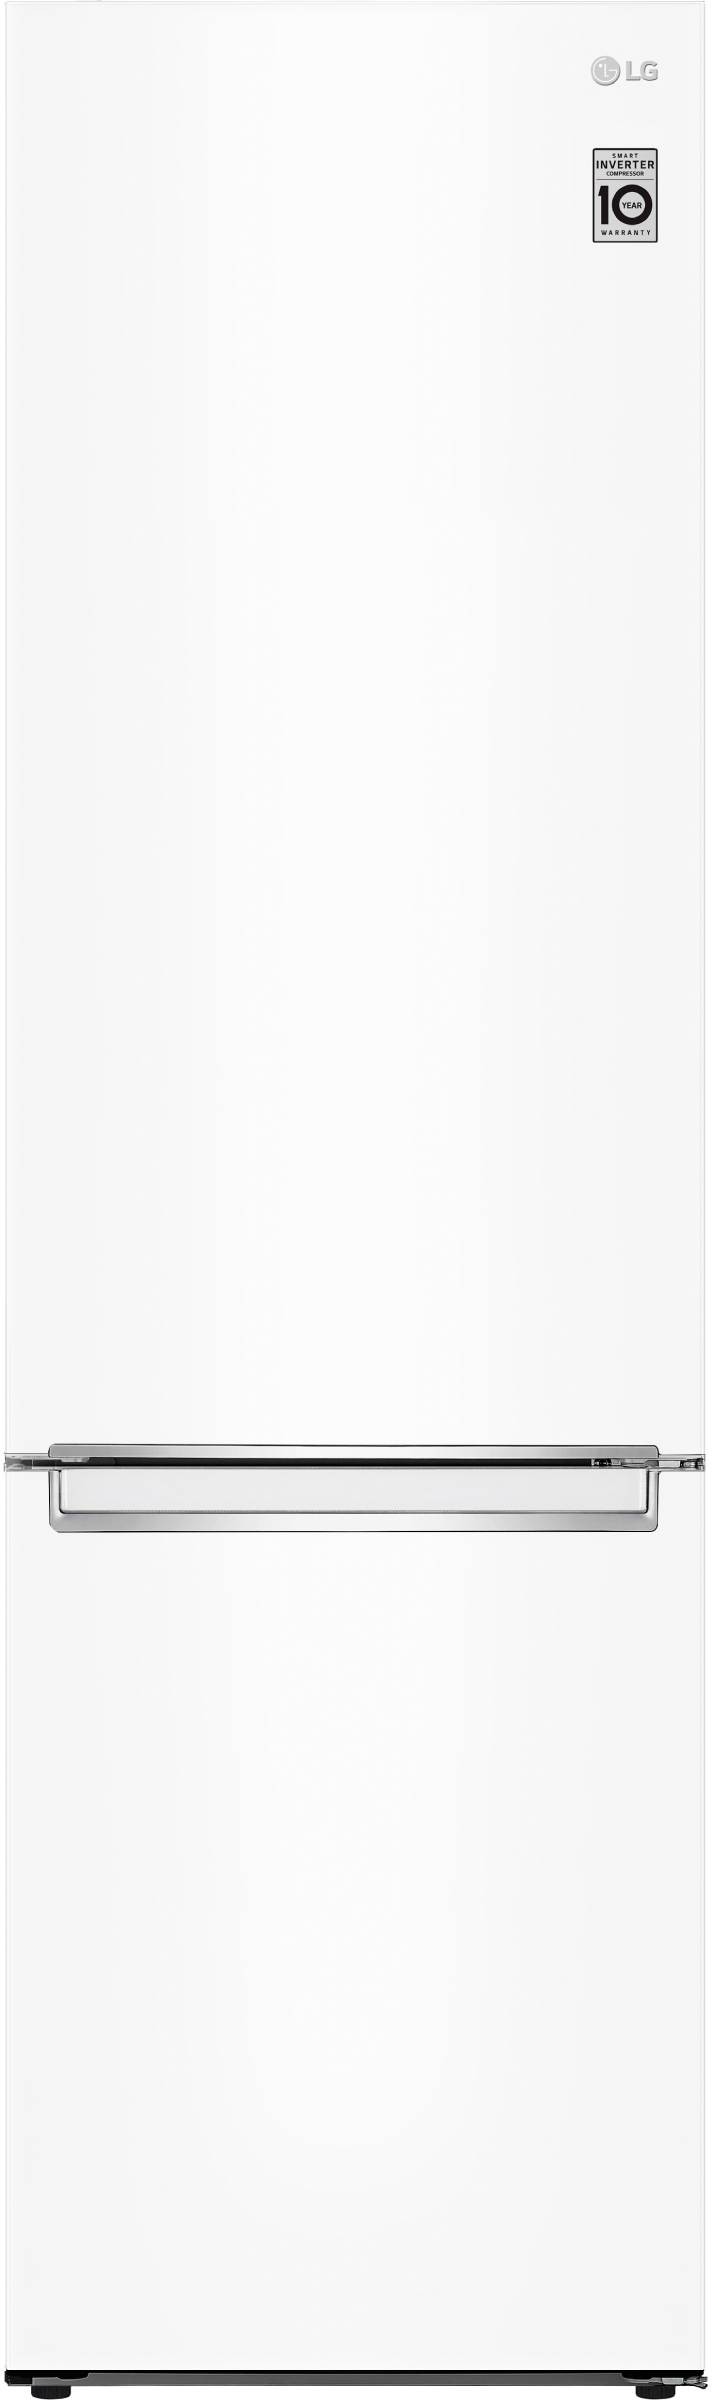 LG Réfrigérateur congélateur bas Total No Frost 384L Blanc - GBB72SWVDN